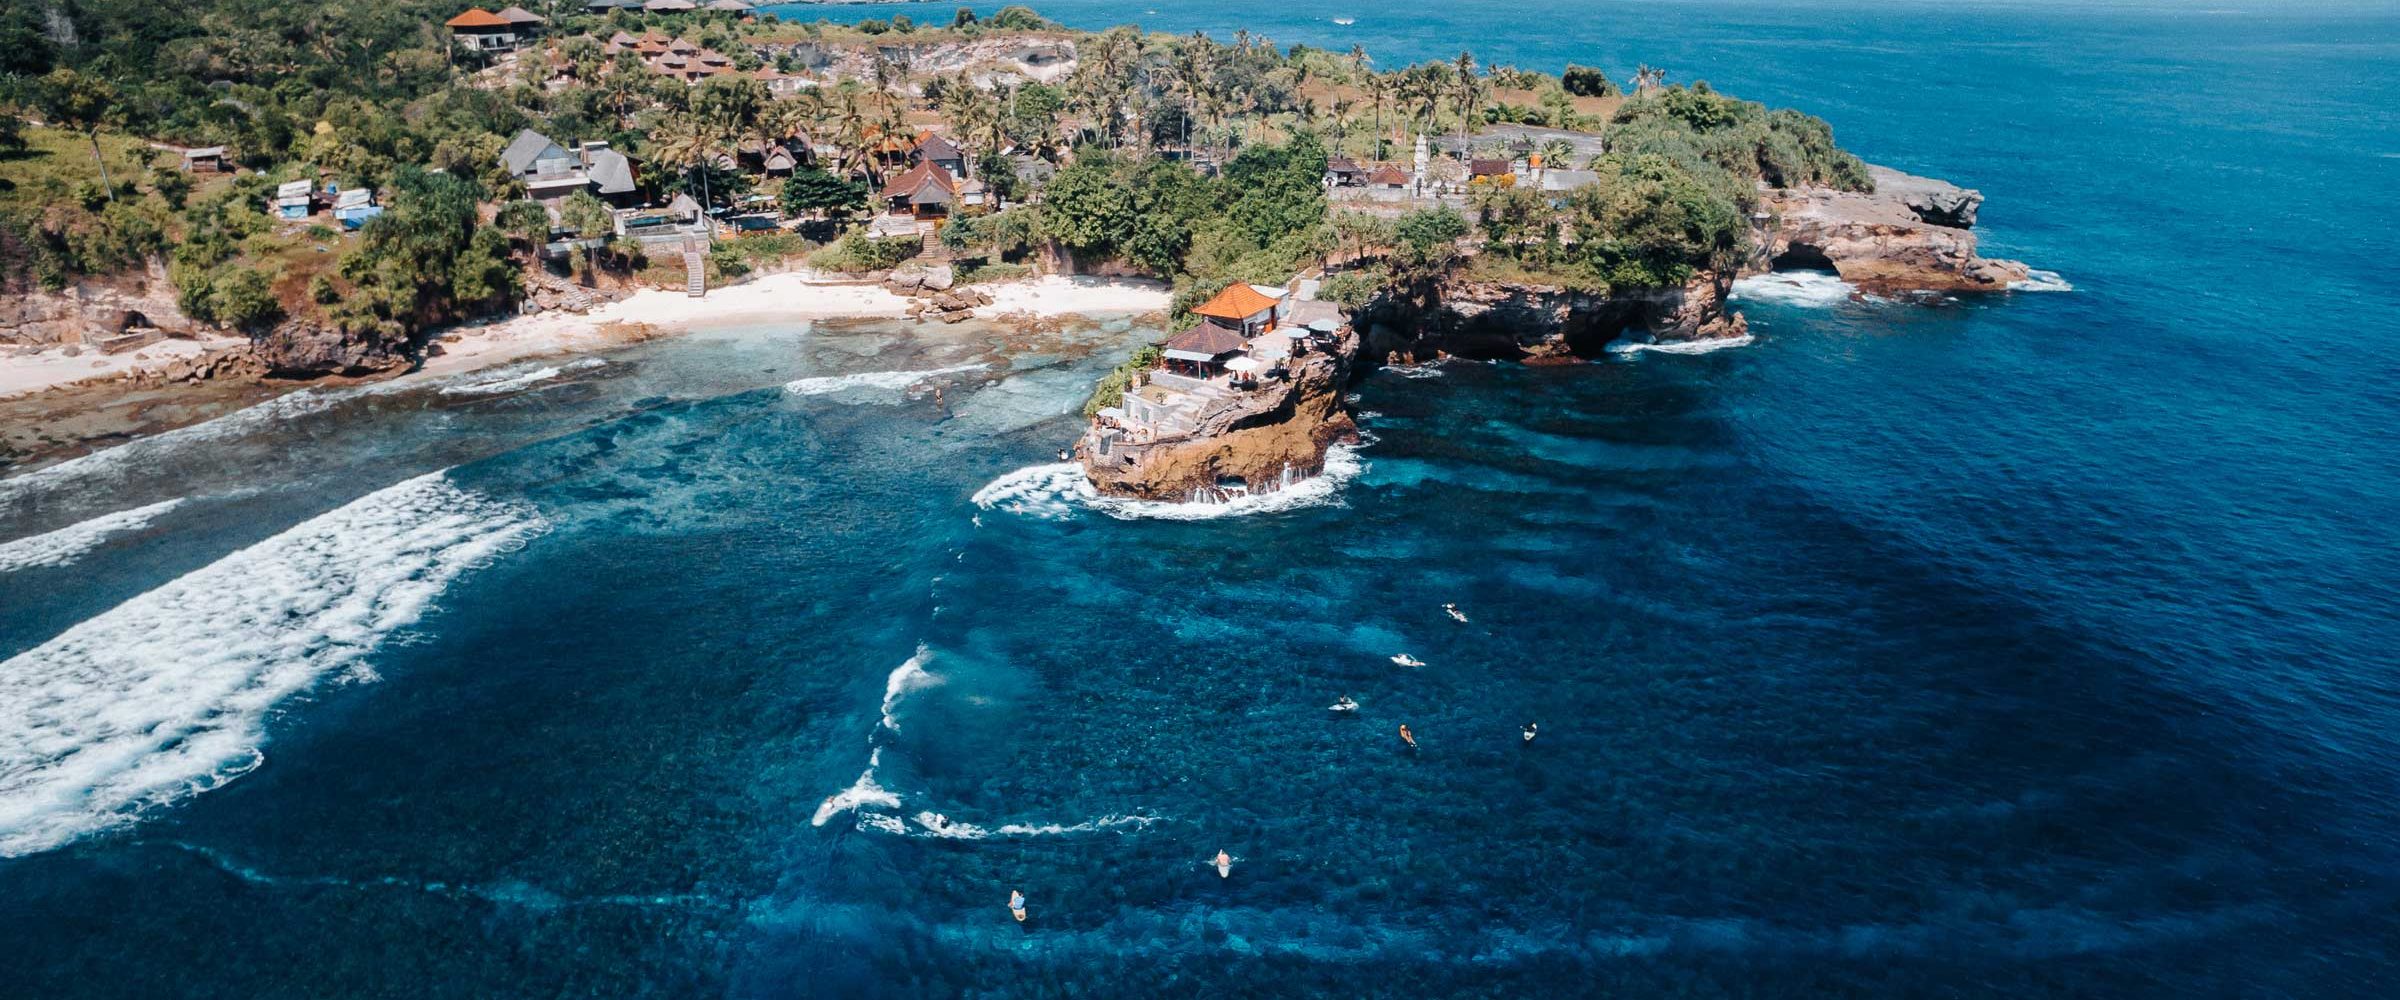 Best Surf Towns Bali